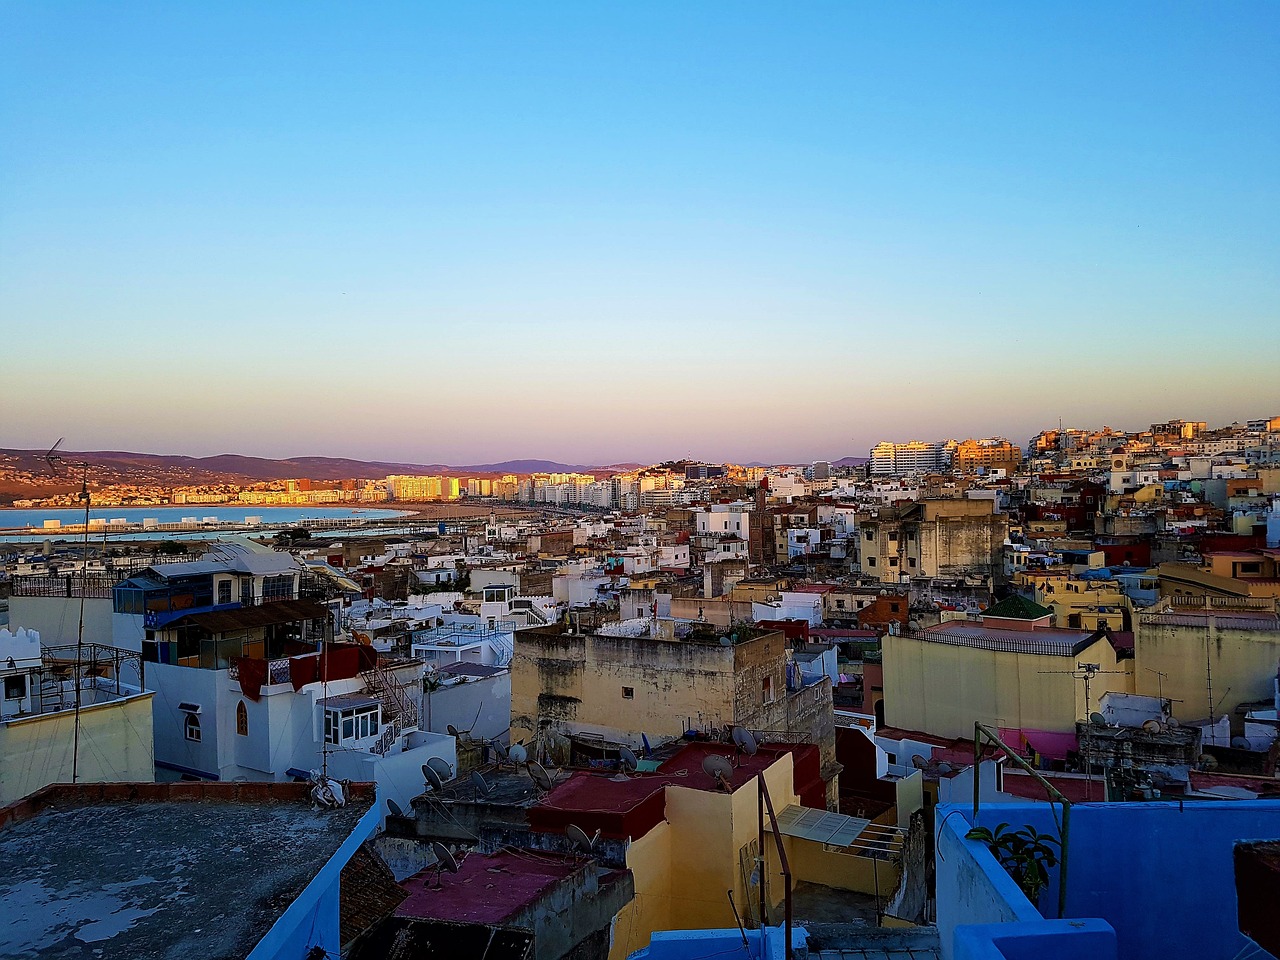 Ruta de 6 dias desde Tanger a Marrakech